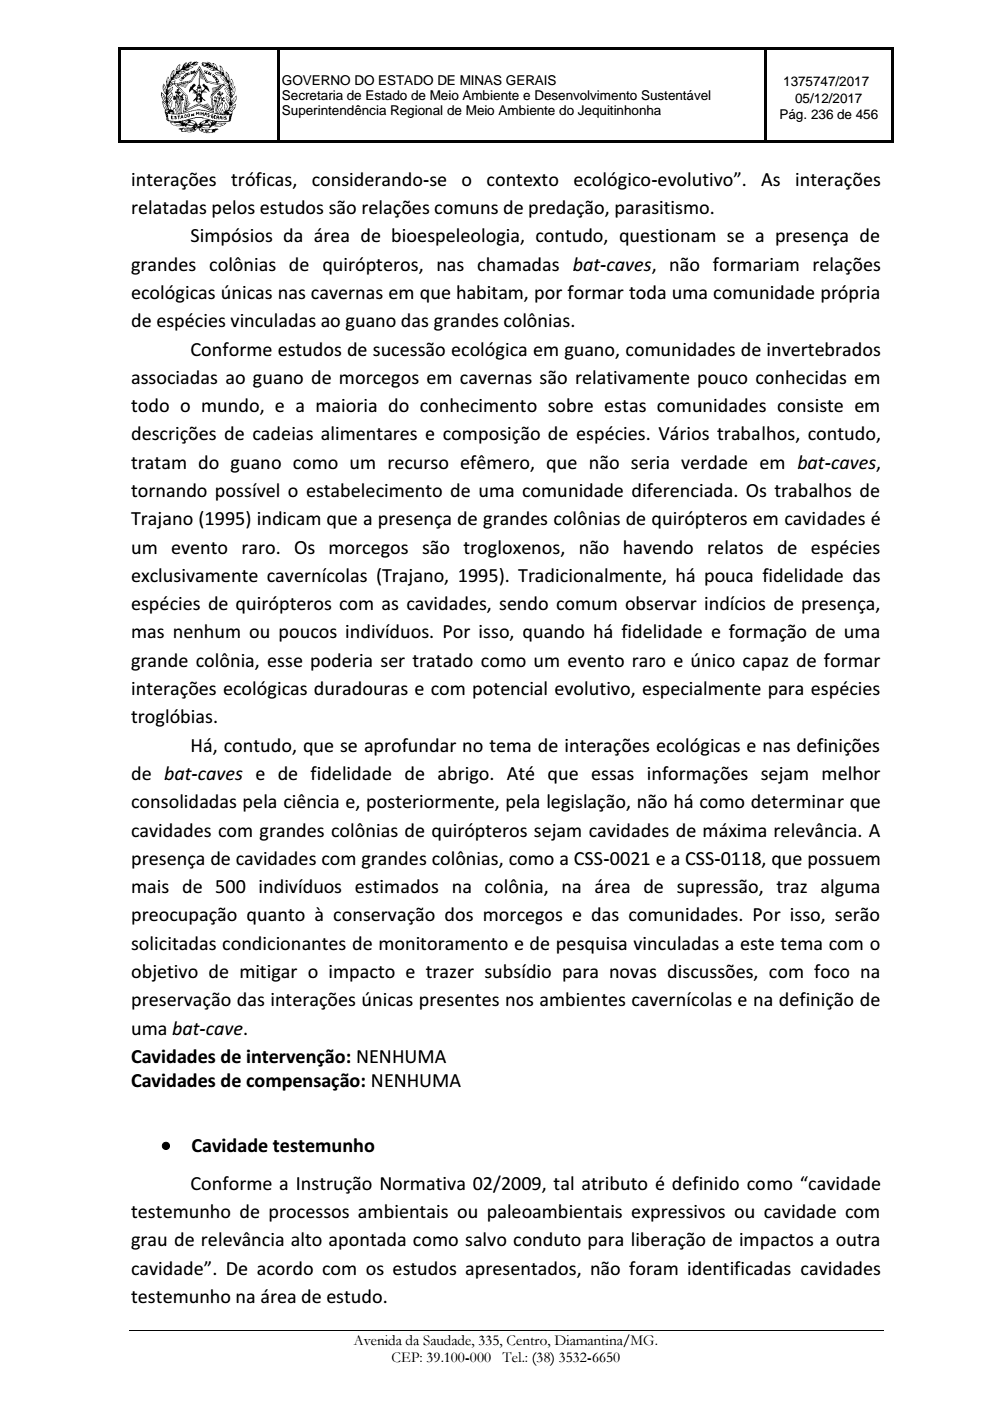 Page 236 from Parecer único da Secretaria de estado de Meio Ambiente e Desenvolvimento Sustentável (SEMAD)